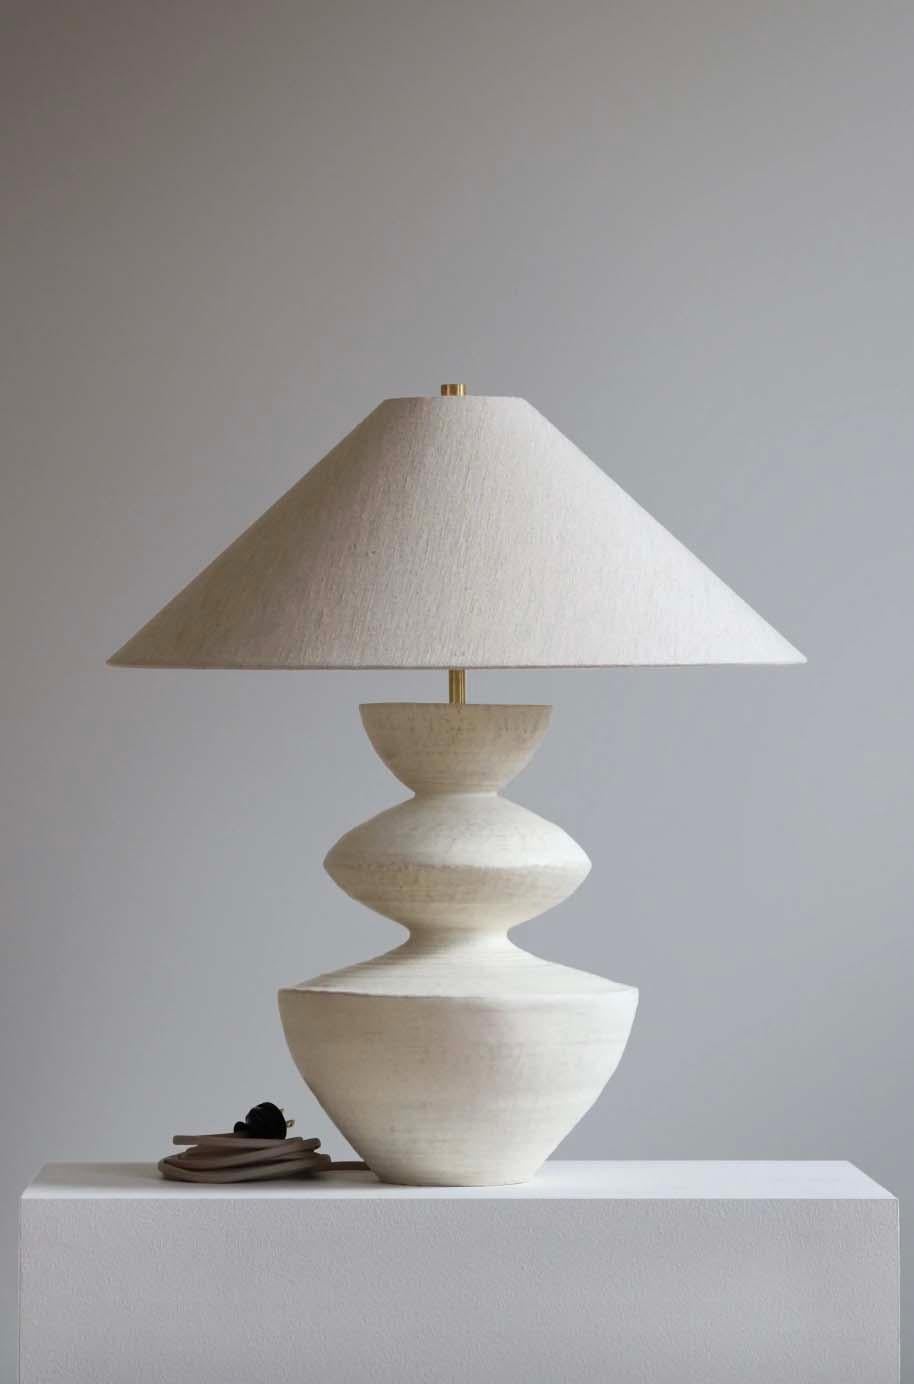 Die Janus-Lampe ist eine handgefertigte Studiotöpferei des Keramikkünstlers Danny Kaplan. Inklusive Lampenschirm. Bitte beachten Sie, dass die genauen Abmessungen variieren können.

Geboren in New York City und aufgewachsen in Aix-en-Provence,